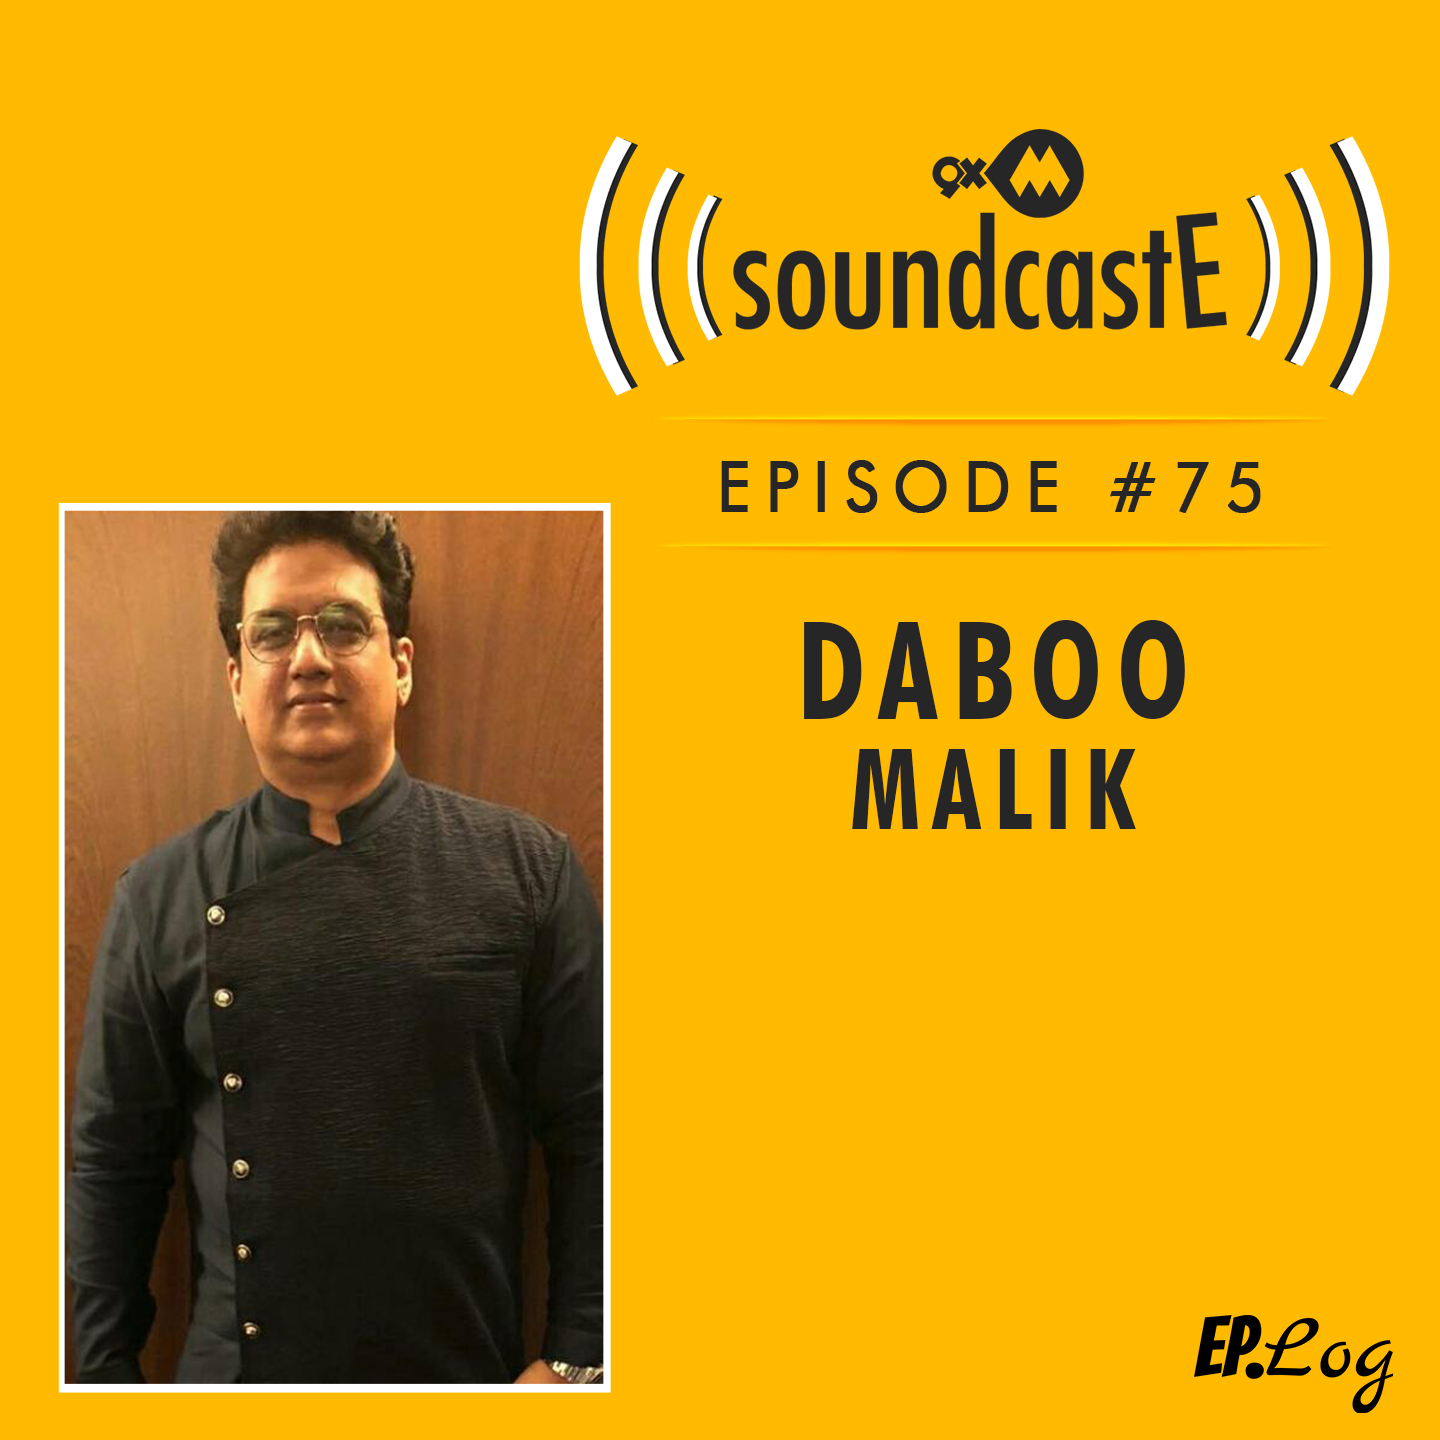 Ep.75: 9XM SoundcastE ft. Daboo Malik